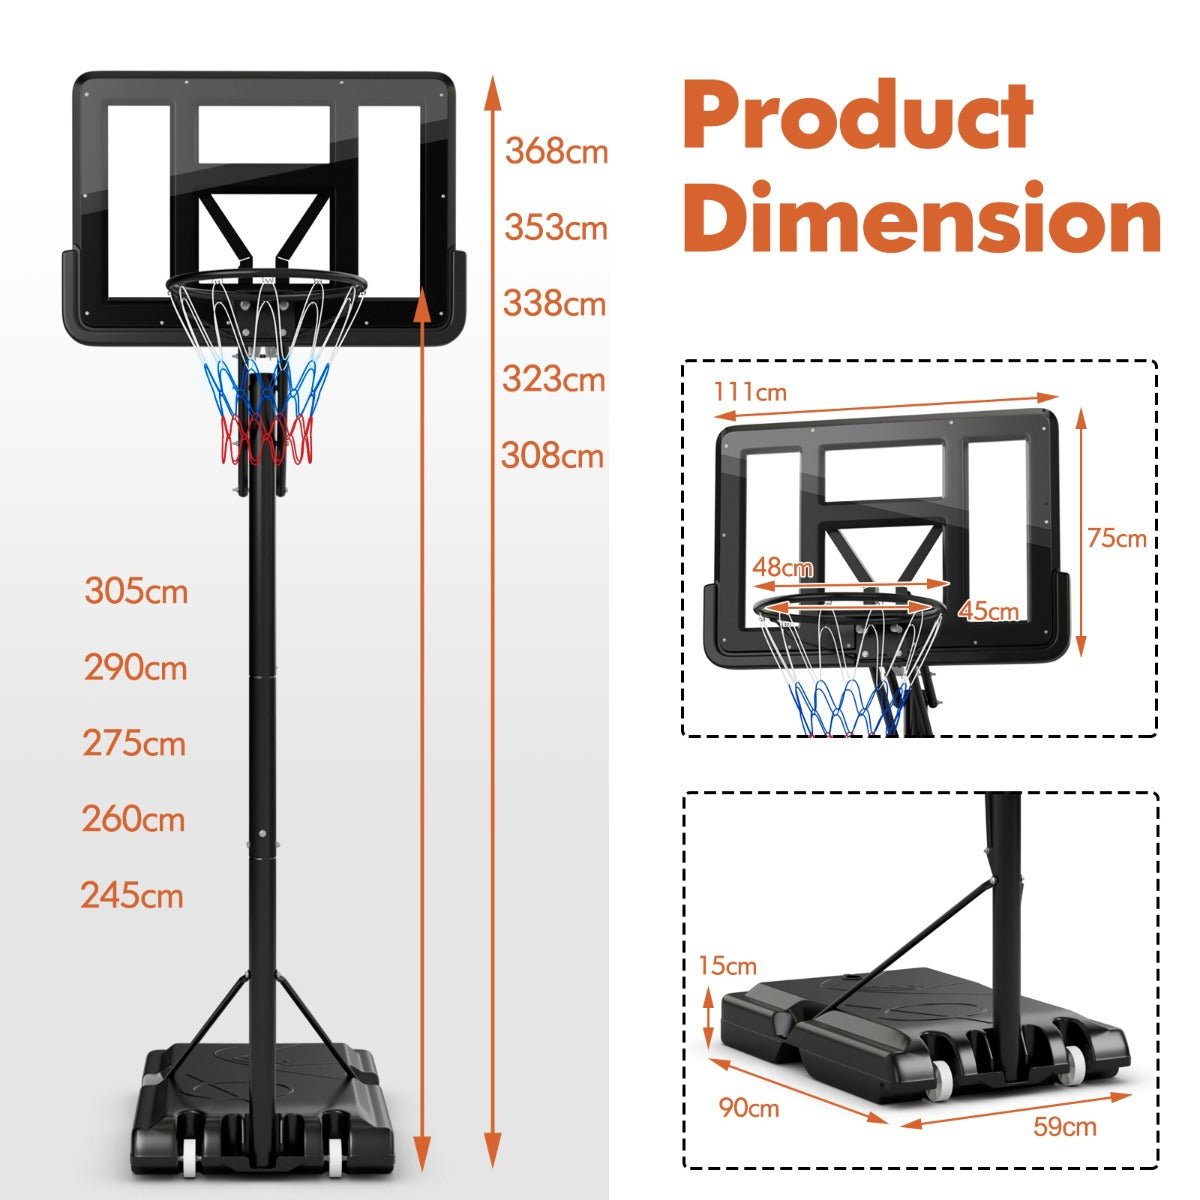 Height-adjustable basketball goal with backboard